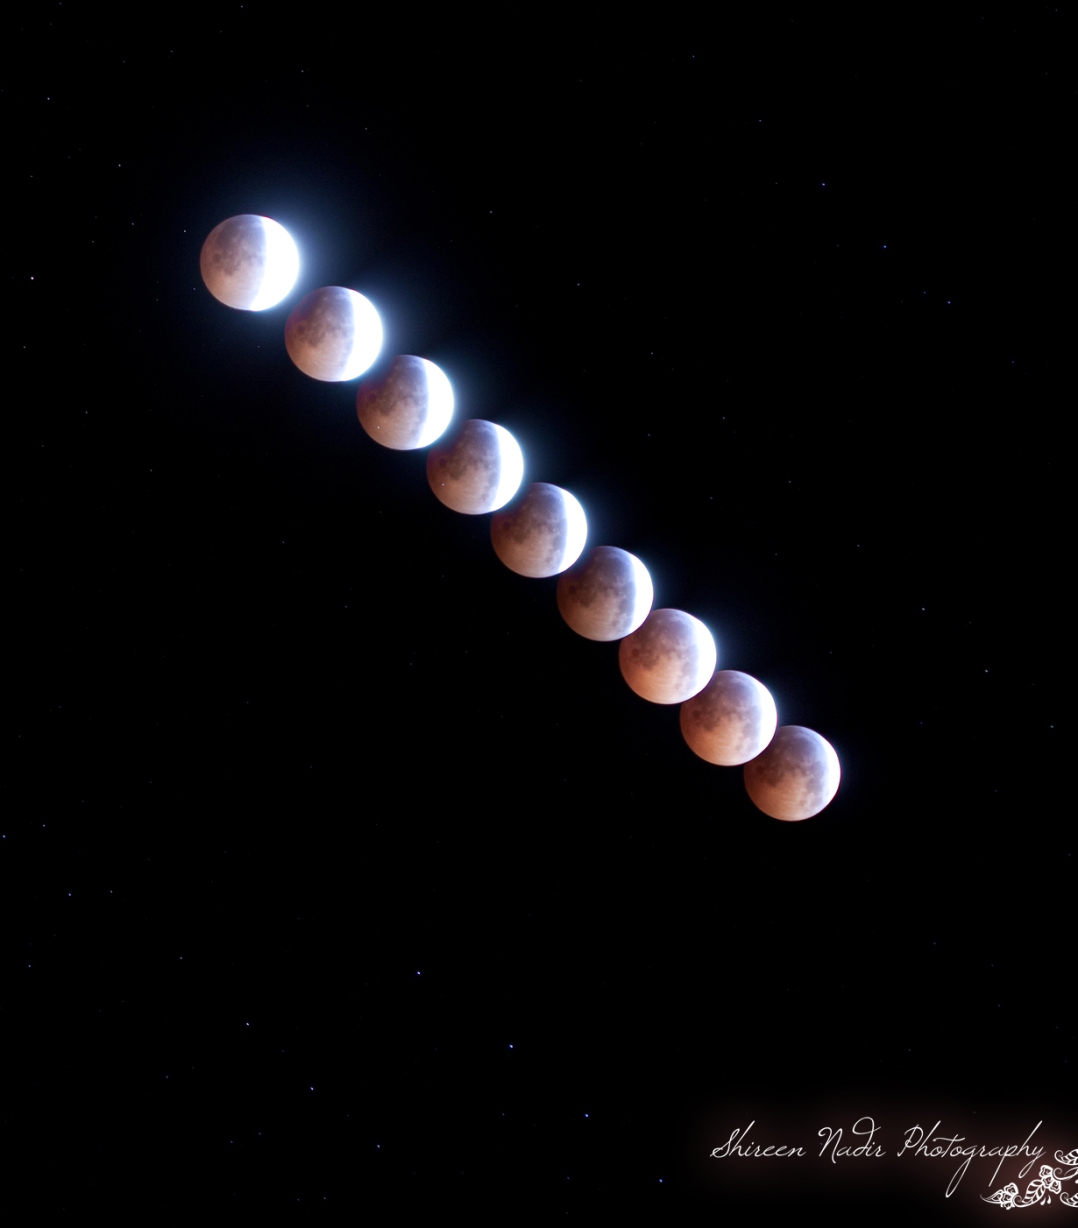 Lunar Eclipse 2010